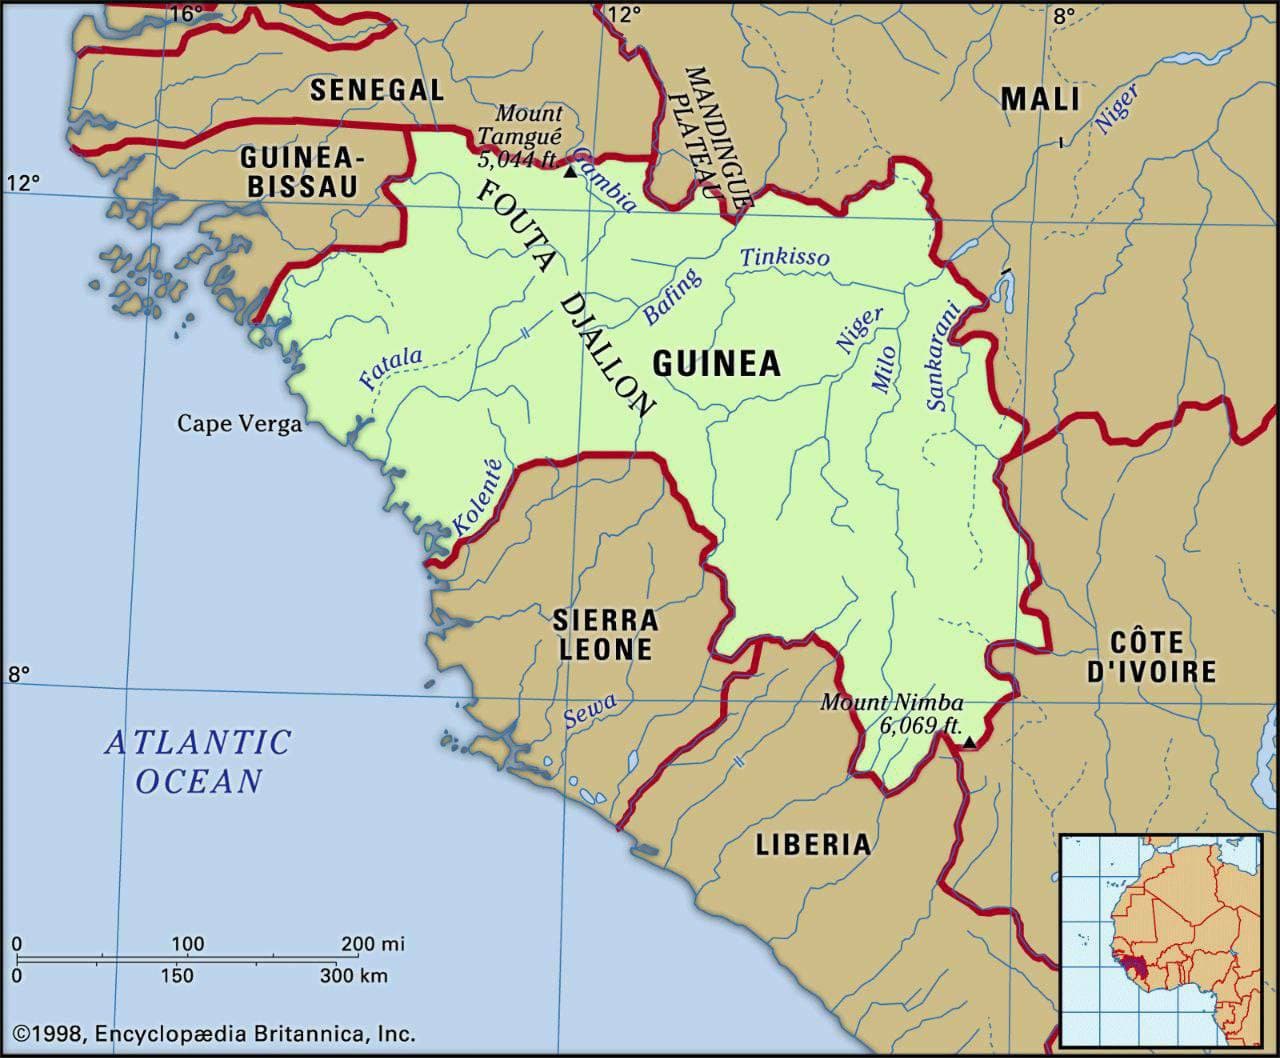 Гвинея официально объявила об эпидемии вируса Эбола и вводит на территории страны тотальный карантин